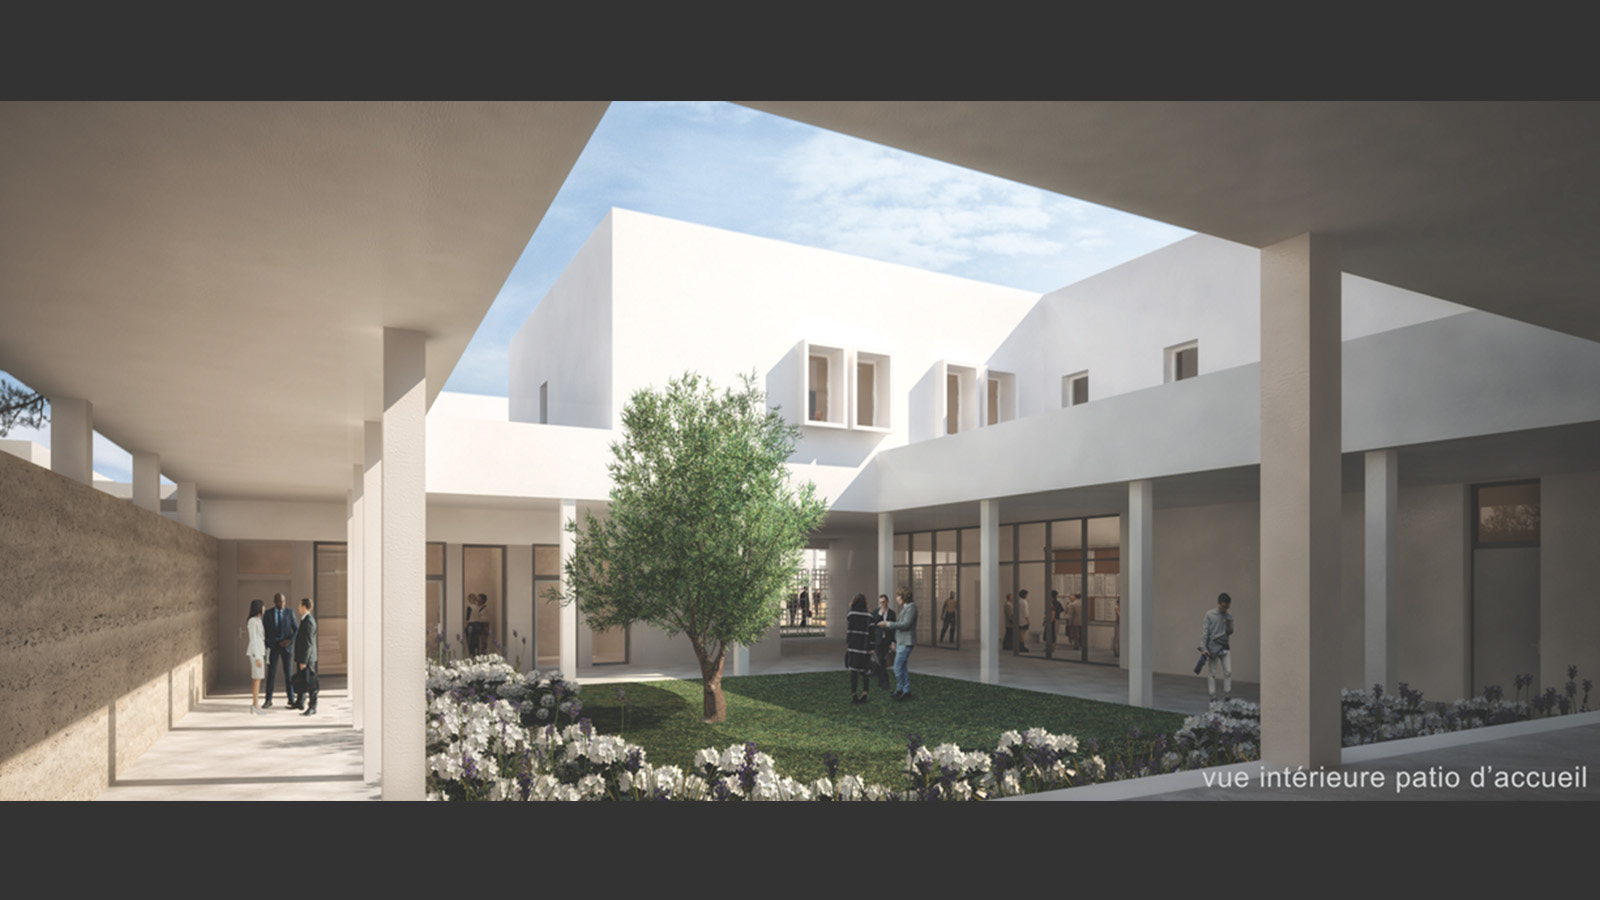 Perspective sur patio, Lycée international Alexandre Dumas - Alger Algérie. Atelier Messaoudi architecture aménagement et design. Bureau d'étude Algérie.